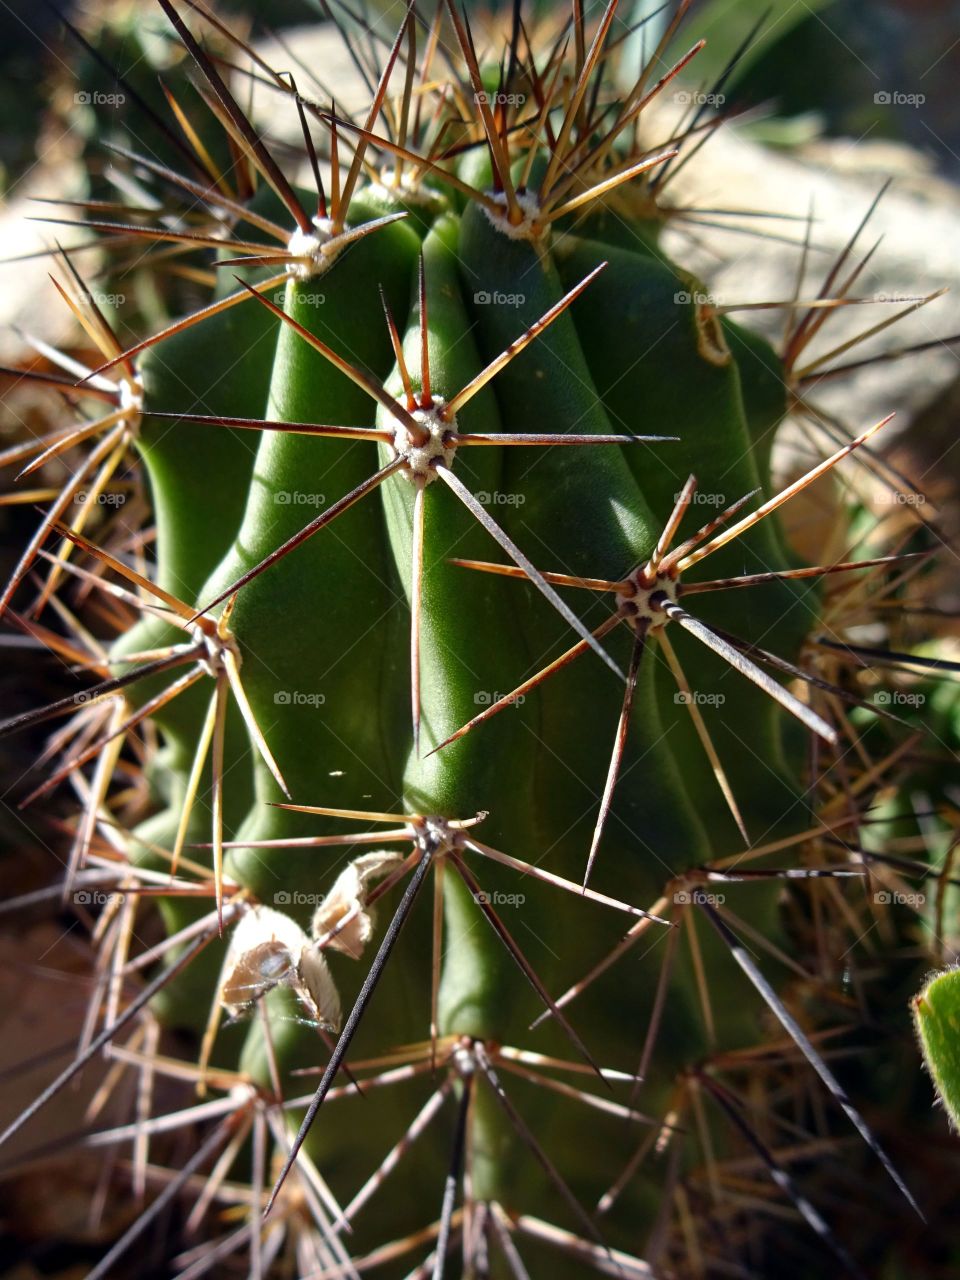 Cactus needle